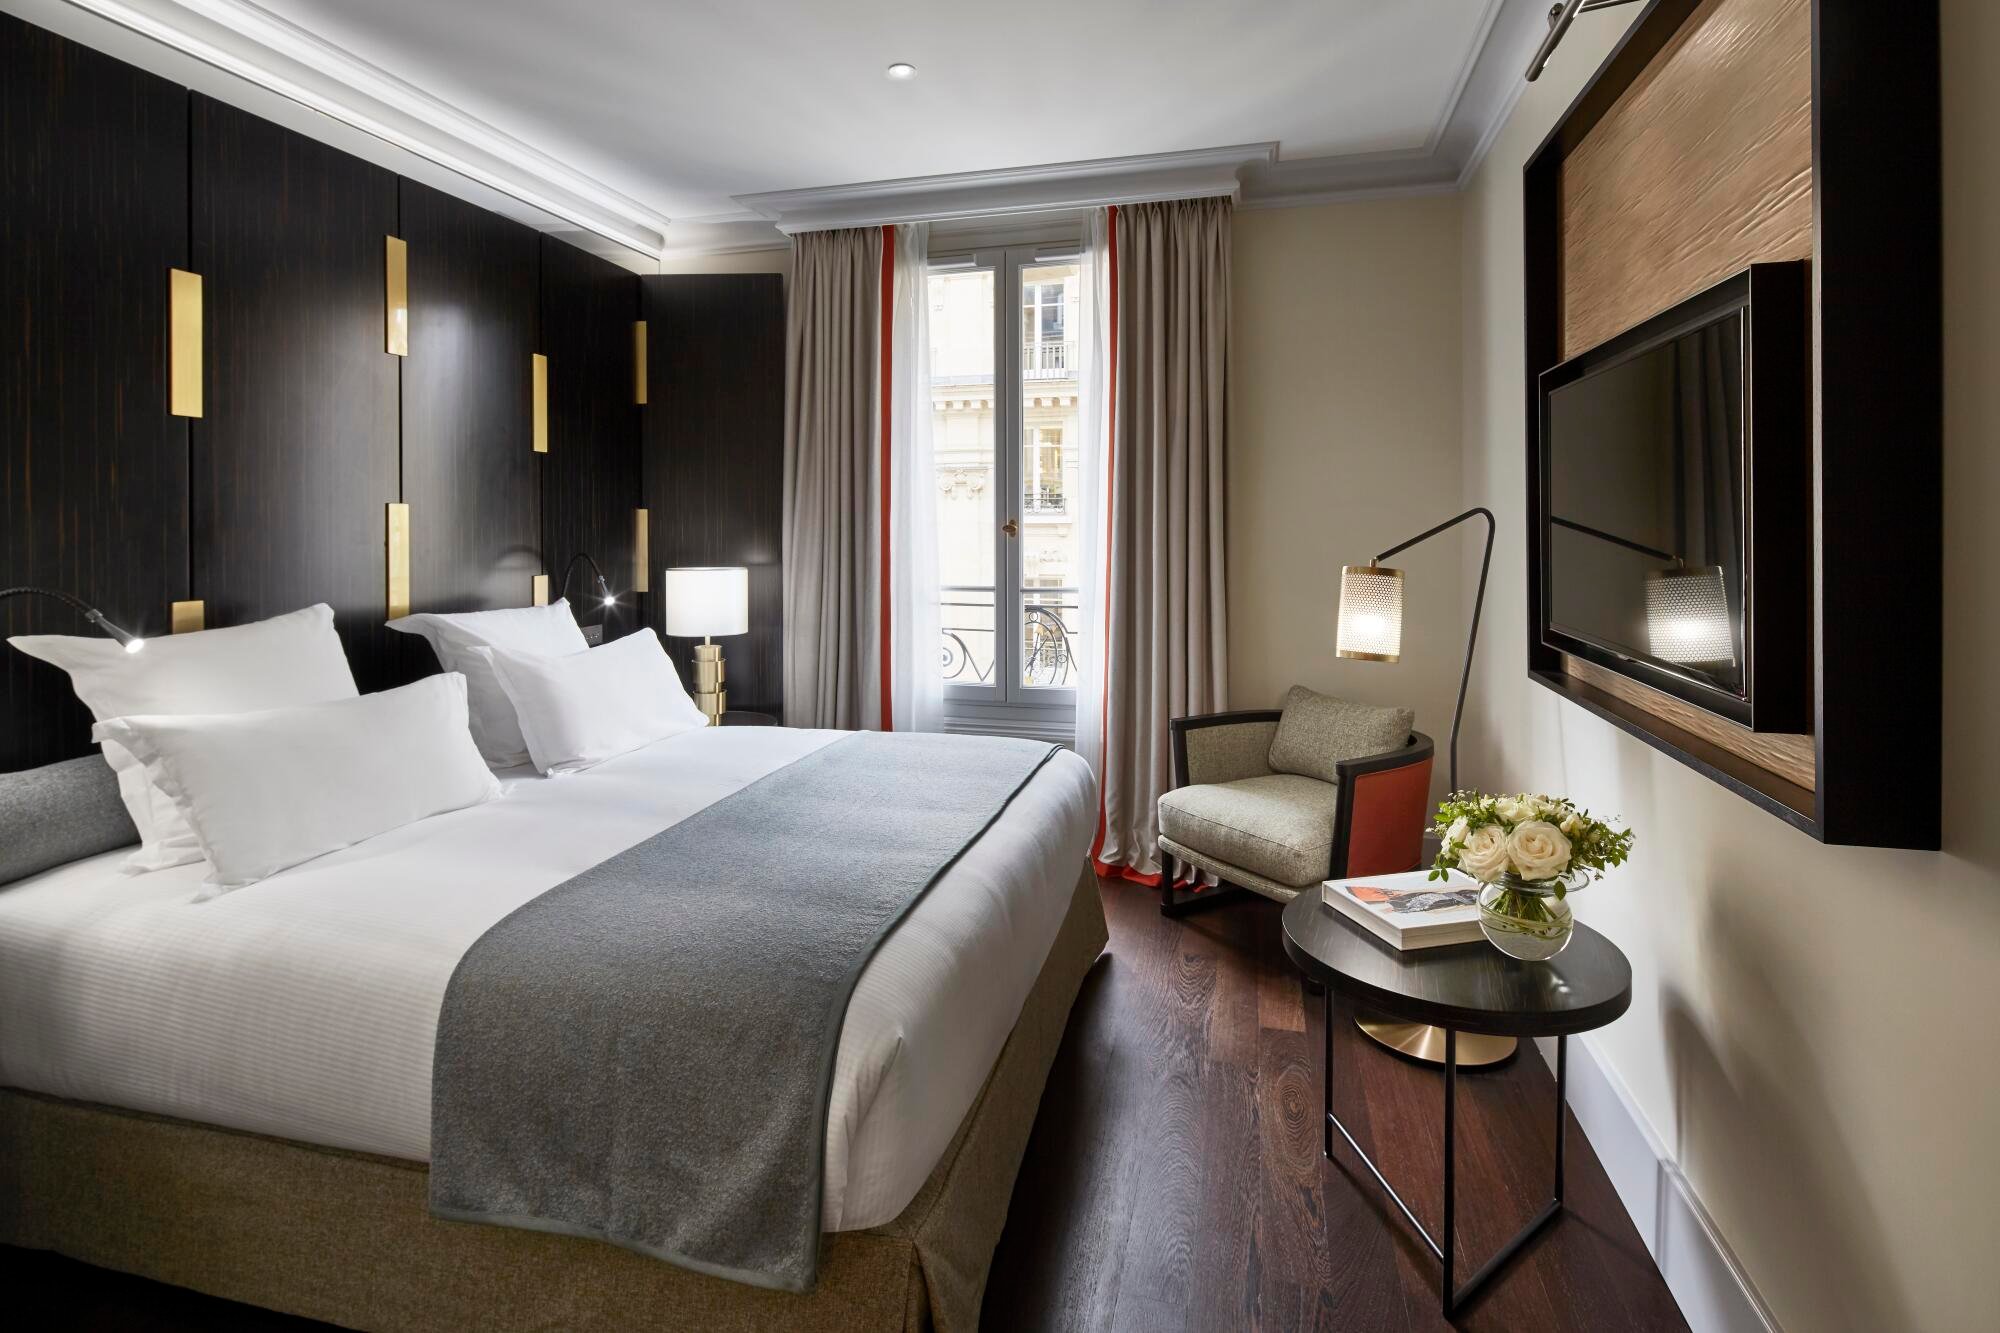 Спальня в отеле 5 звезд. Отель в Париже 5 звезд. Отель 5 звезд Париж номера.